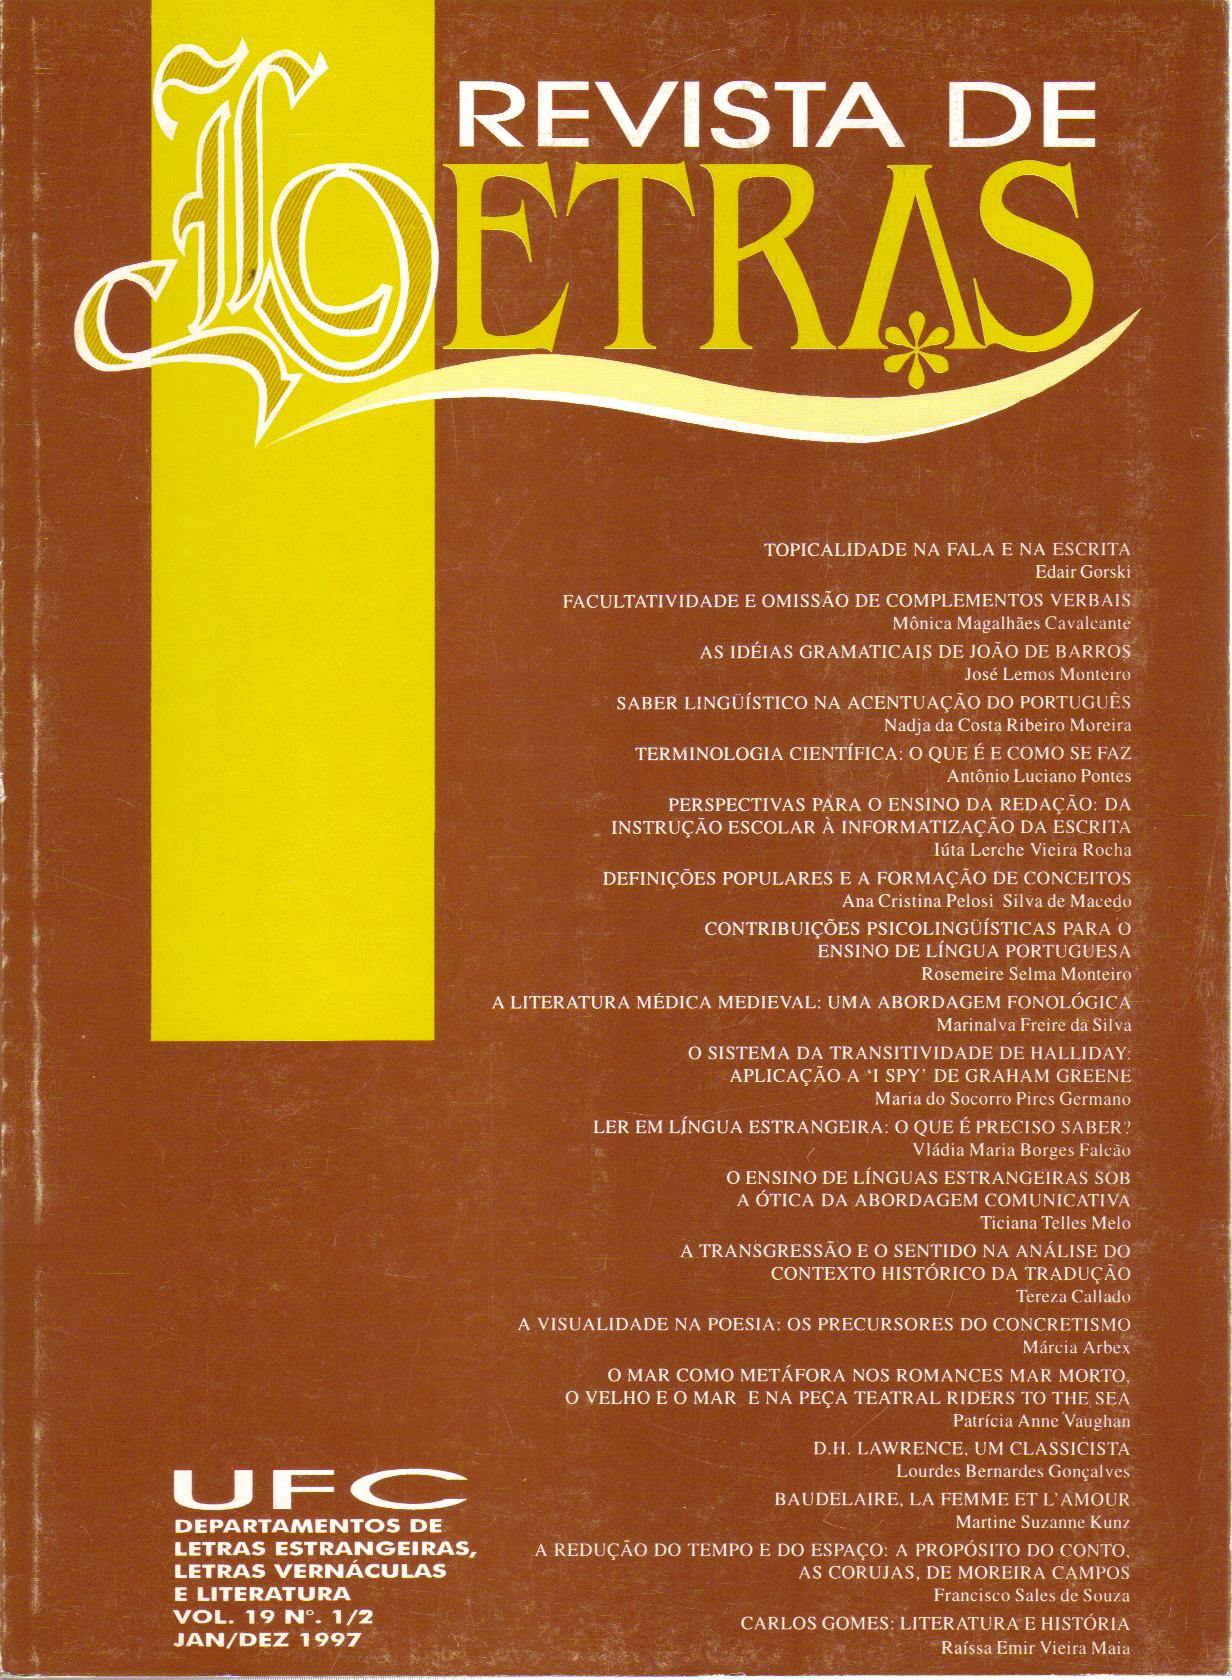 					Visualizar v. 1 n. 19 (1997): REVISTA DE LETRAS V. 1, N. 19 (1997)
				